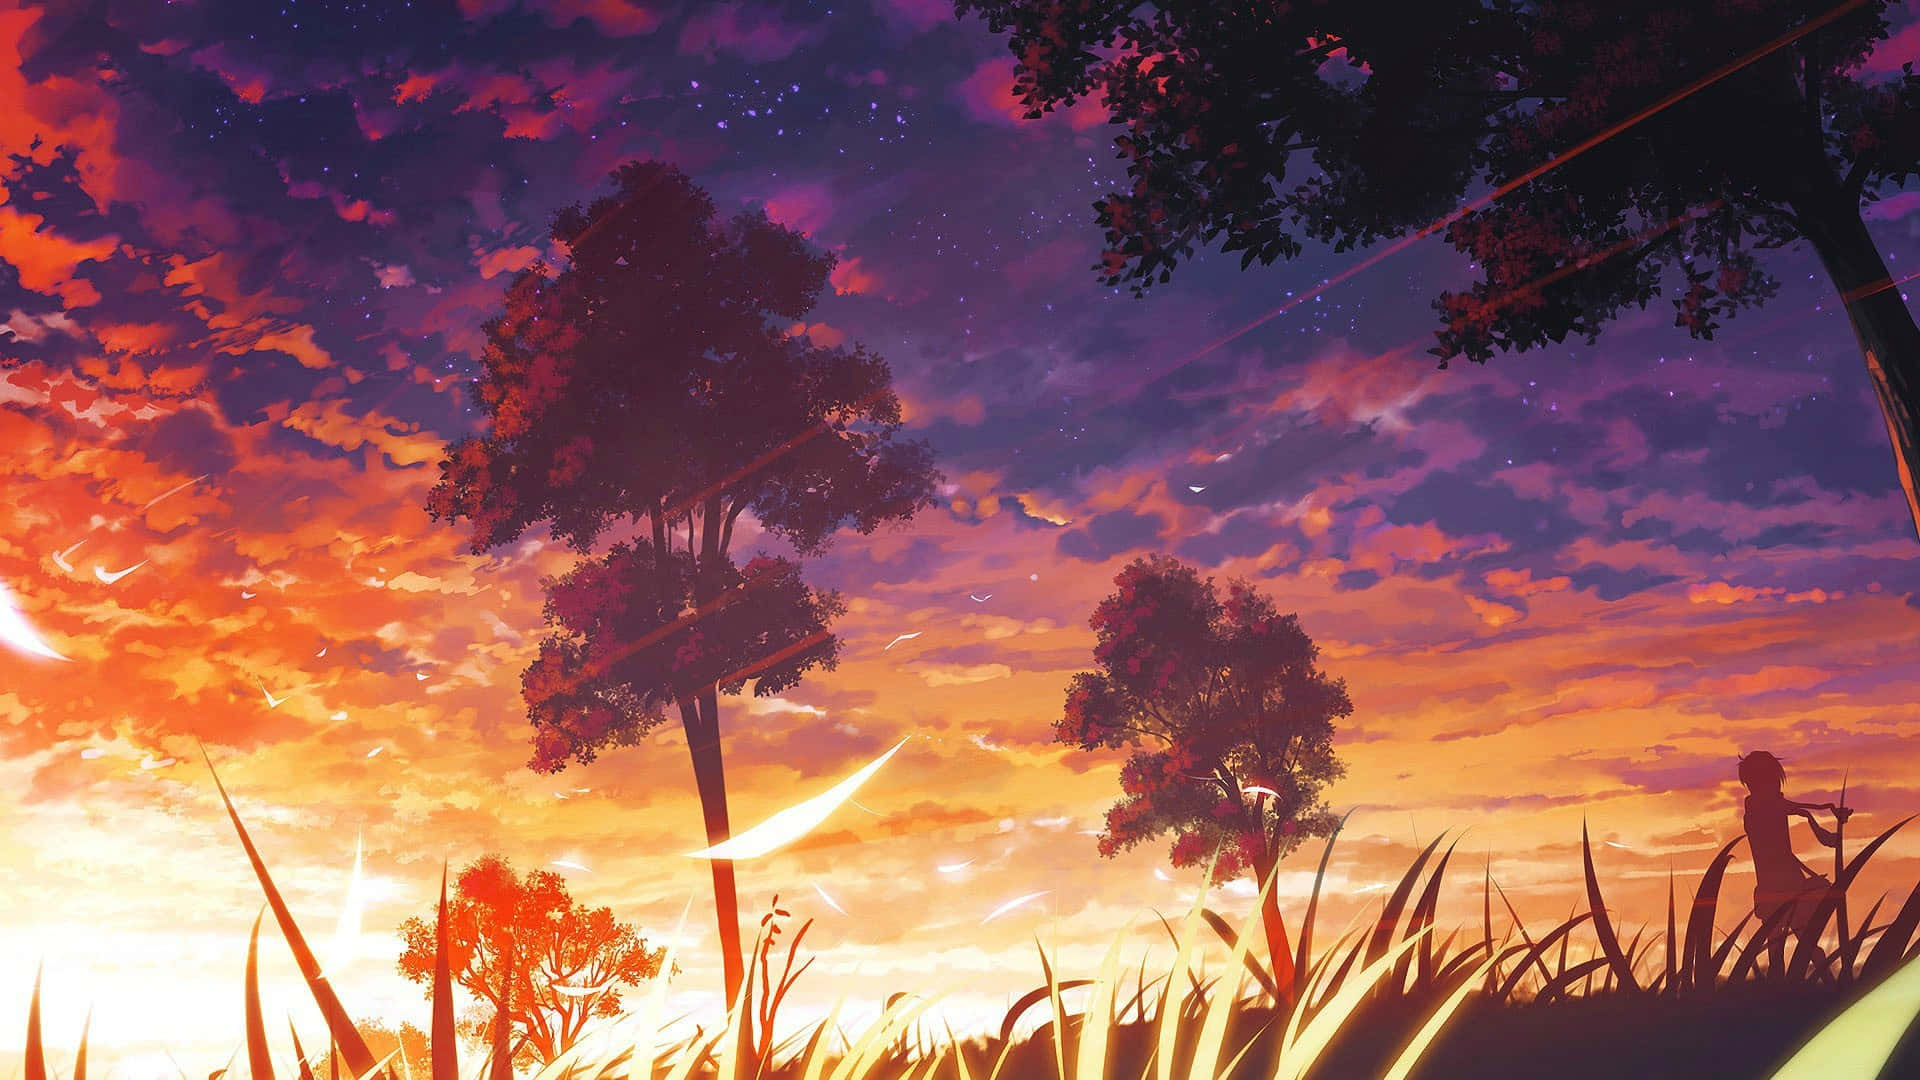 Uppleven Fantastisk Himmel Med Anime-karaktärer I Bakgrunden!